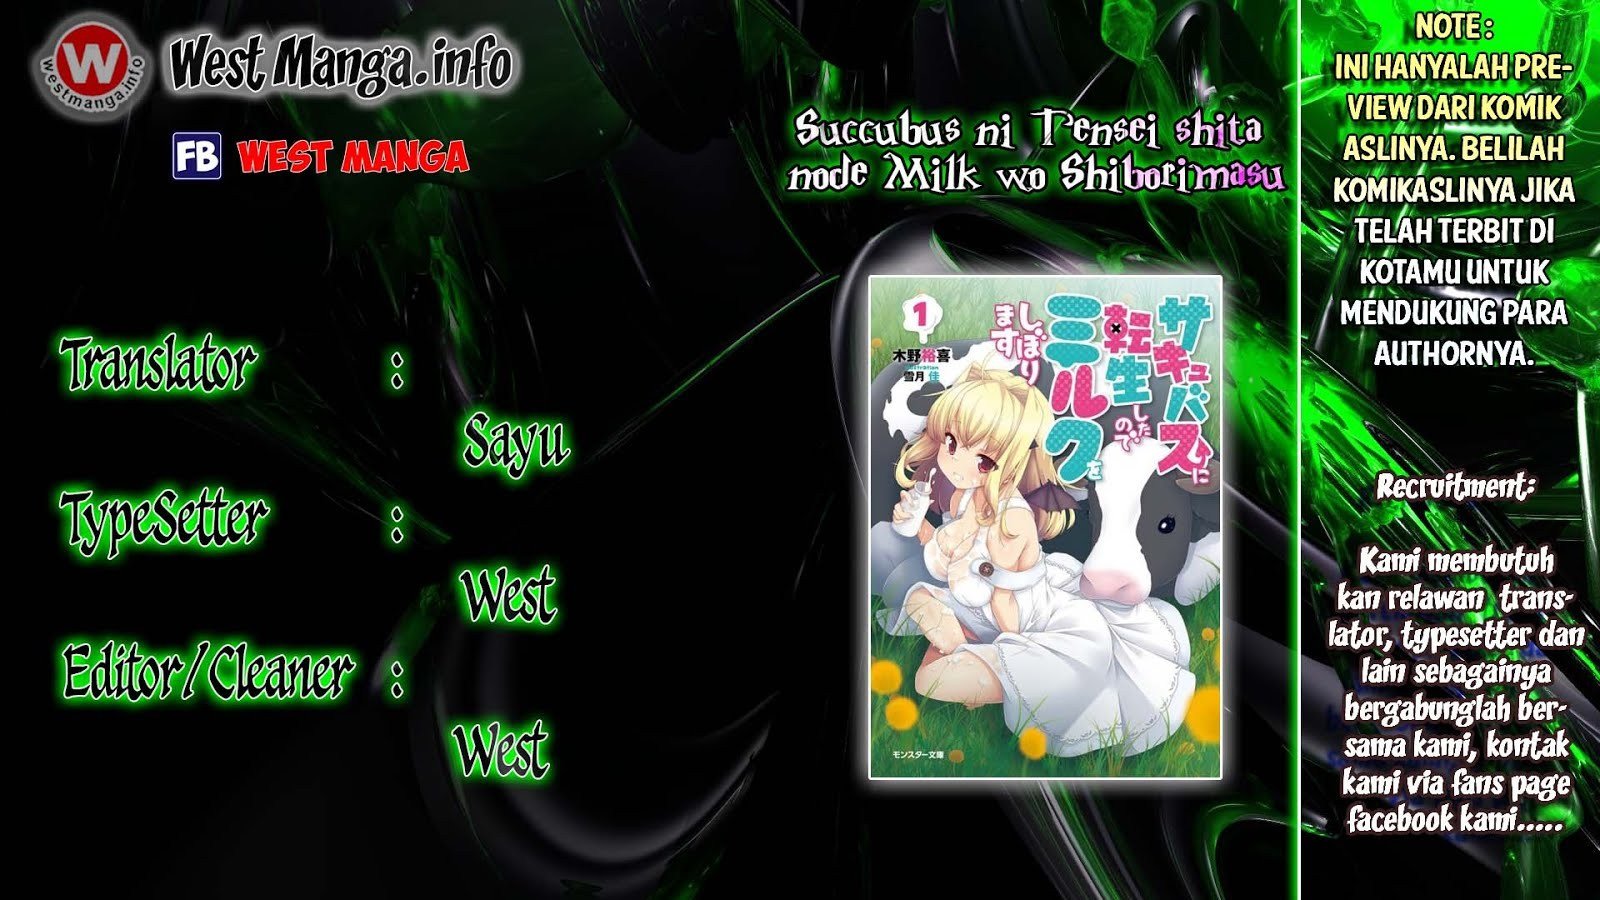 Succubus ni Tensei shita node Milk wo Shiborimasu Chapter 01